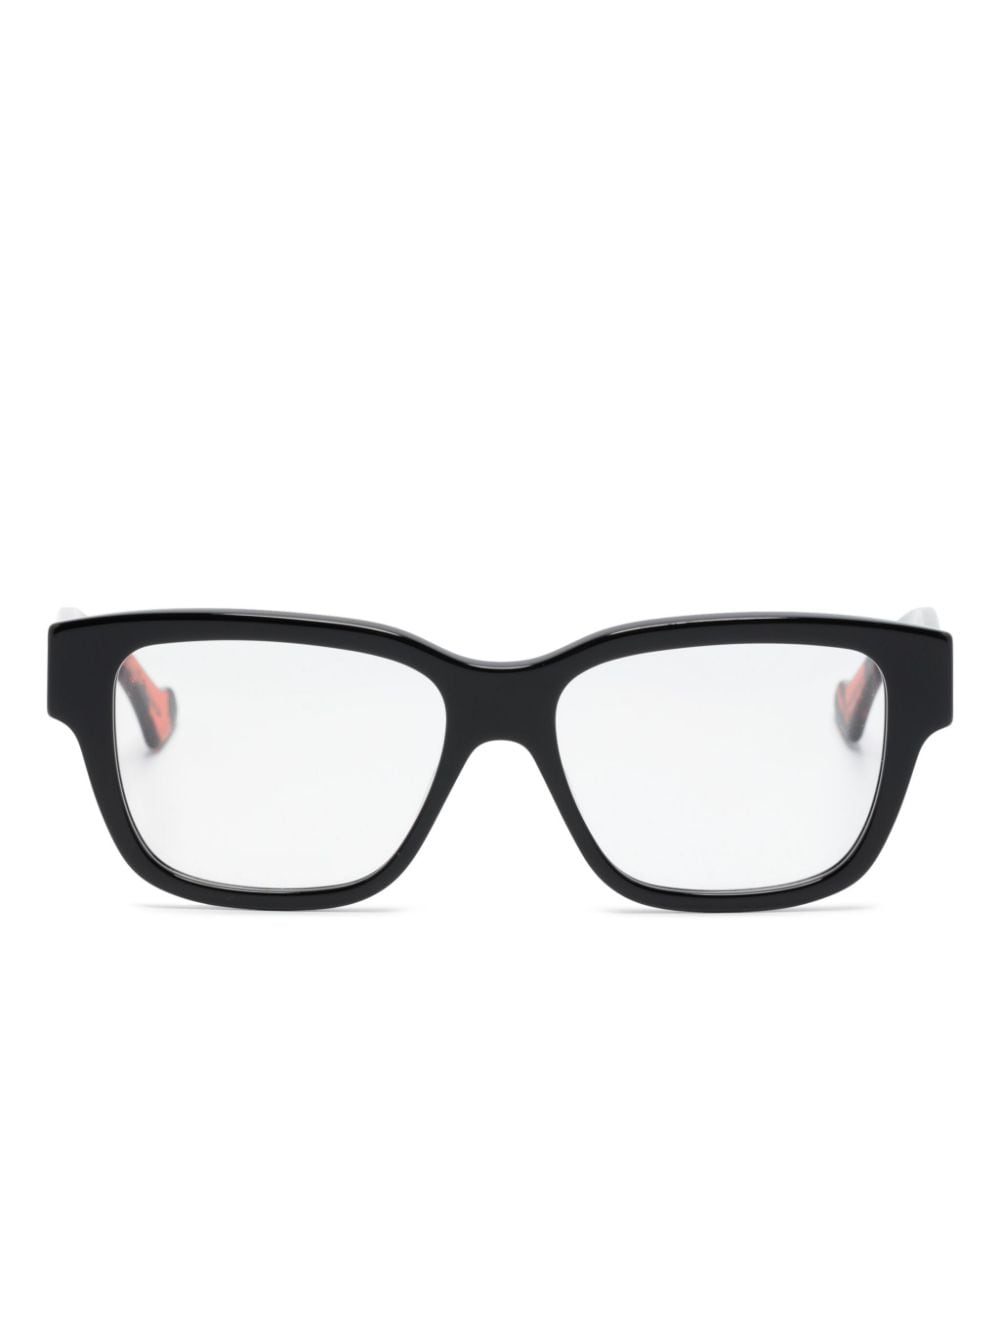 Gucci Tortoiseshell Rectangle-frame Glasses In Black